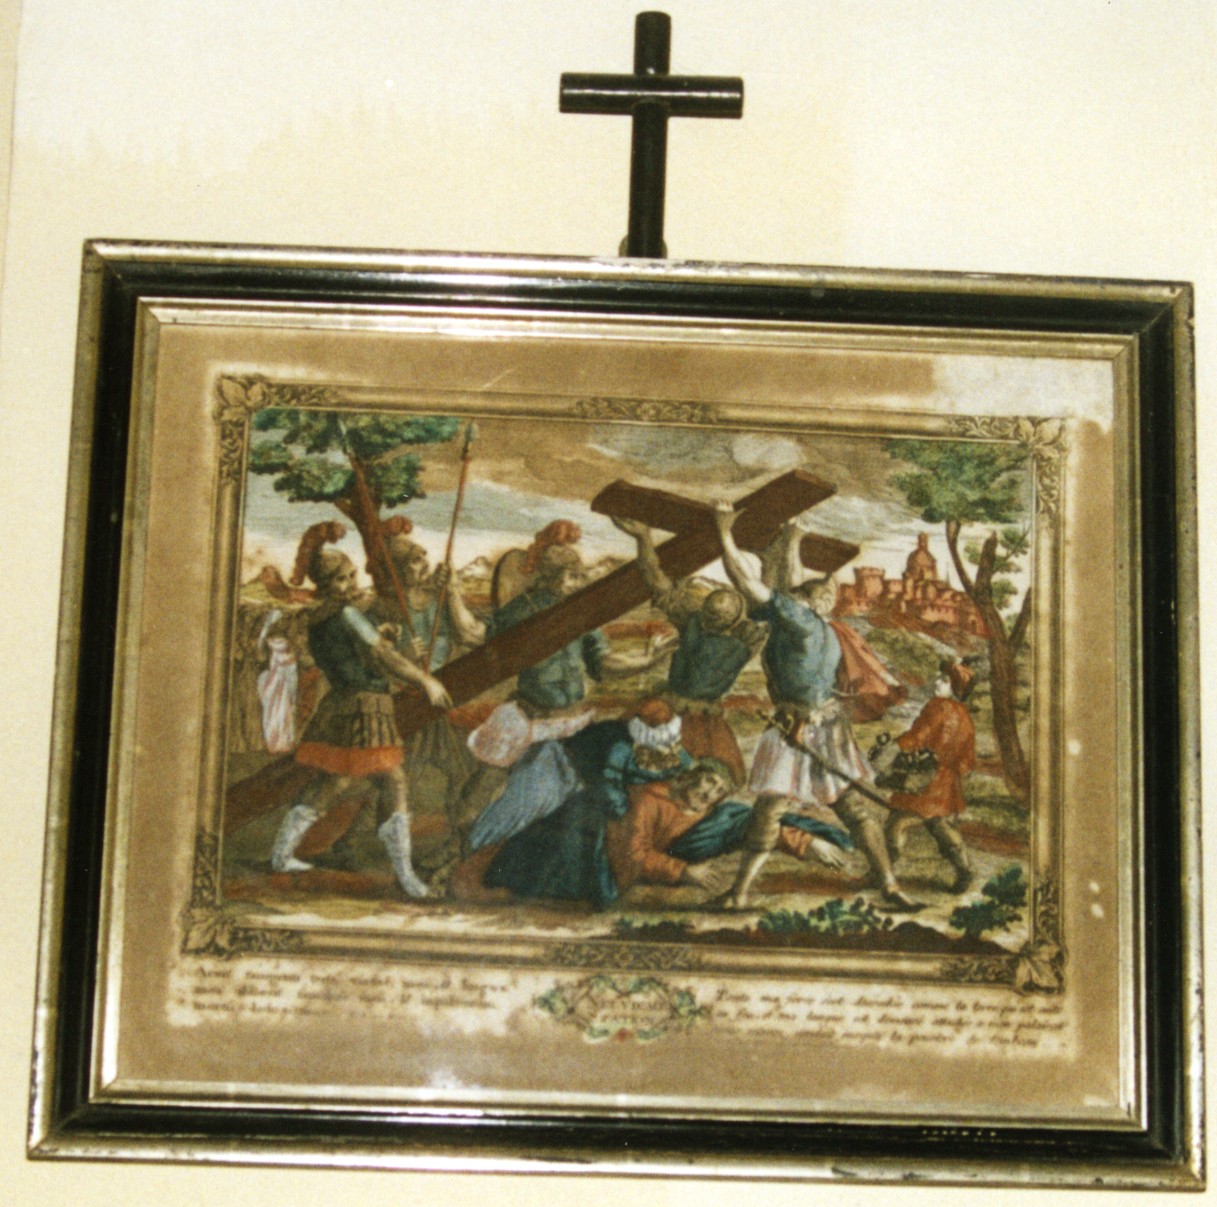 Stazione ix: gesù cade sotto la croce la terza volta (via crucis)